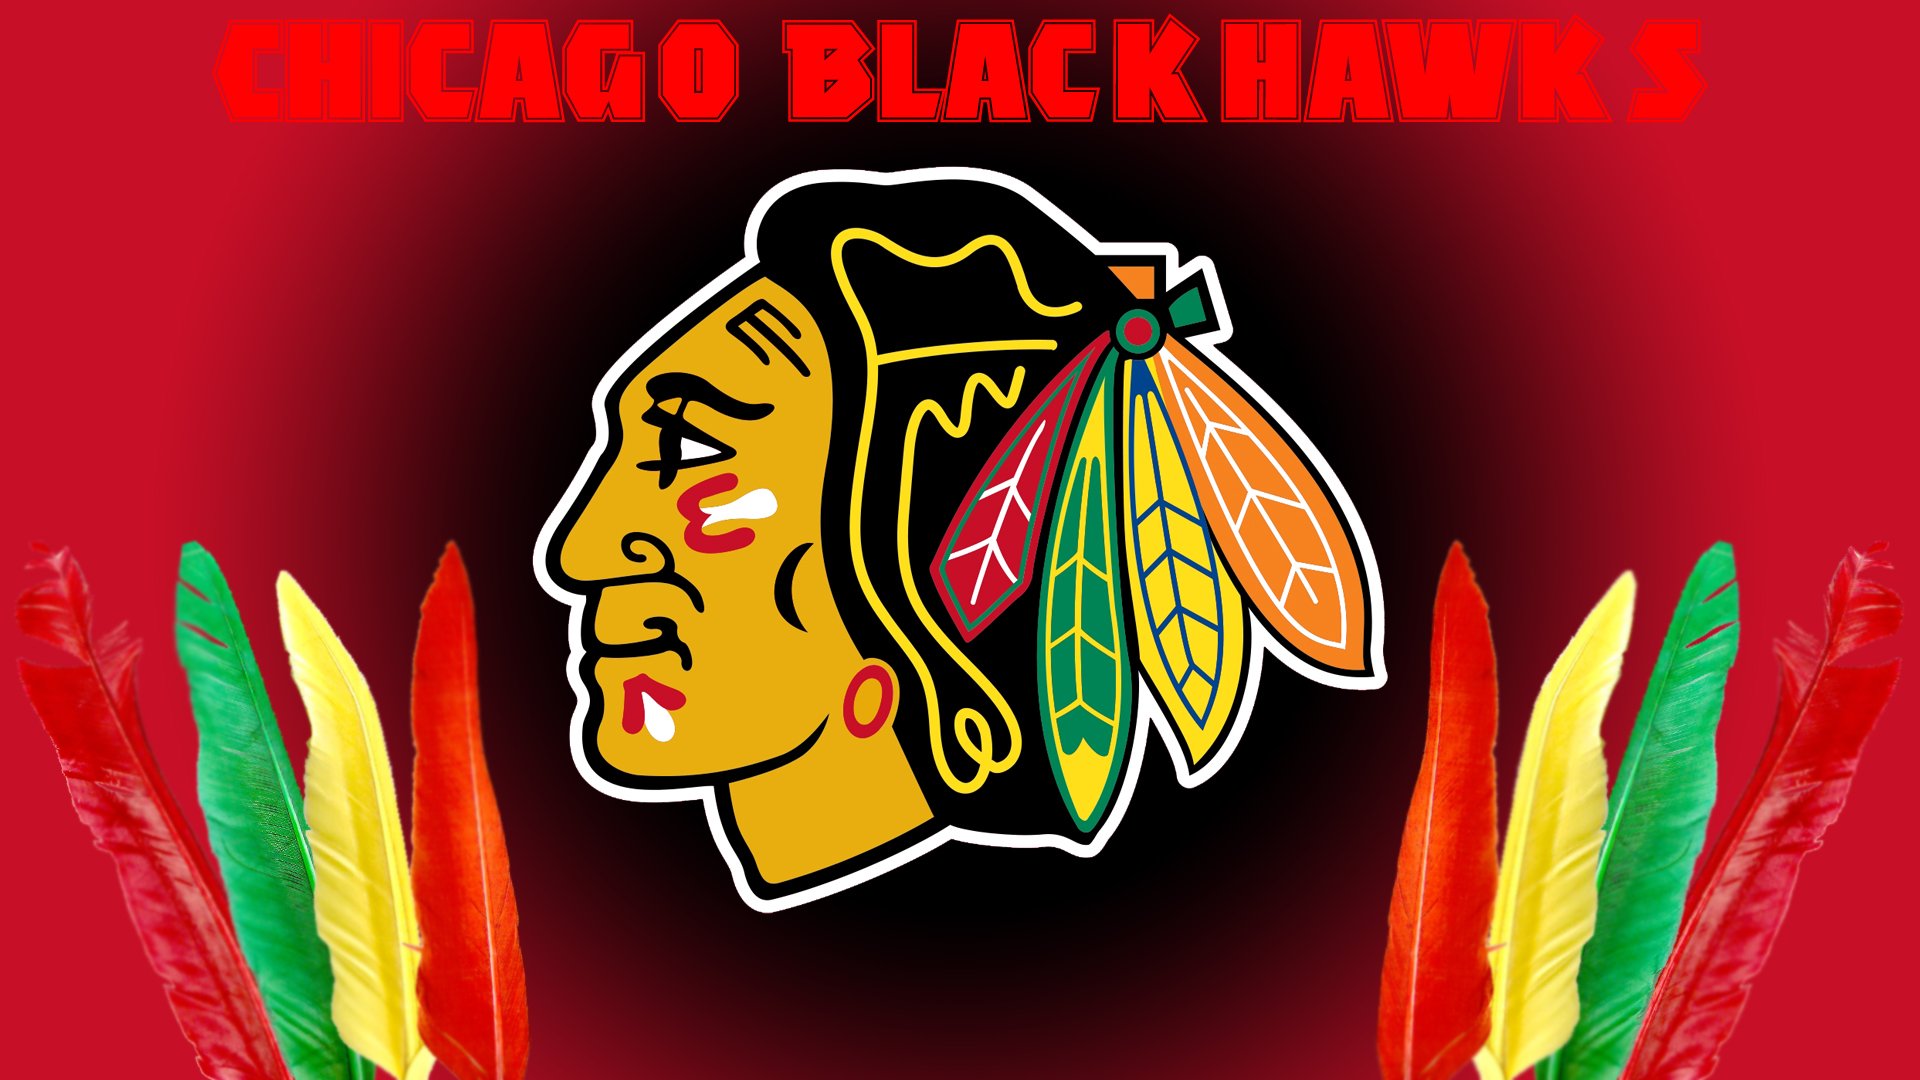 Chicago Blackhawks Nhl Hockey Wallpaper Background